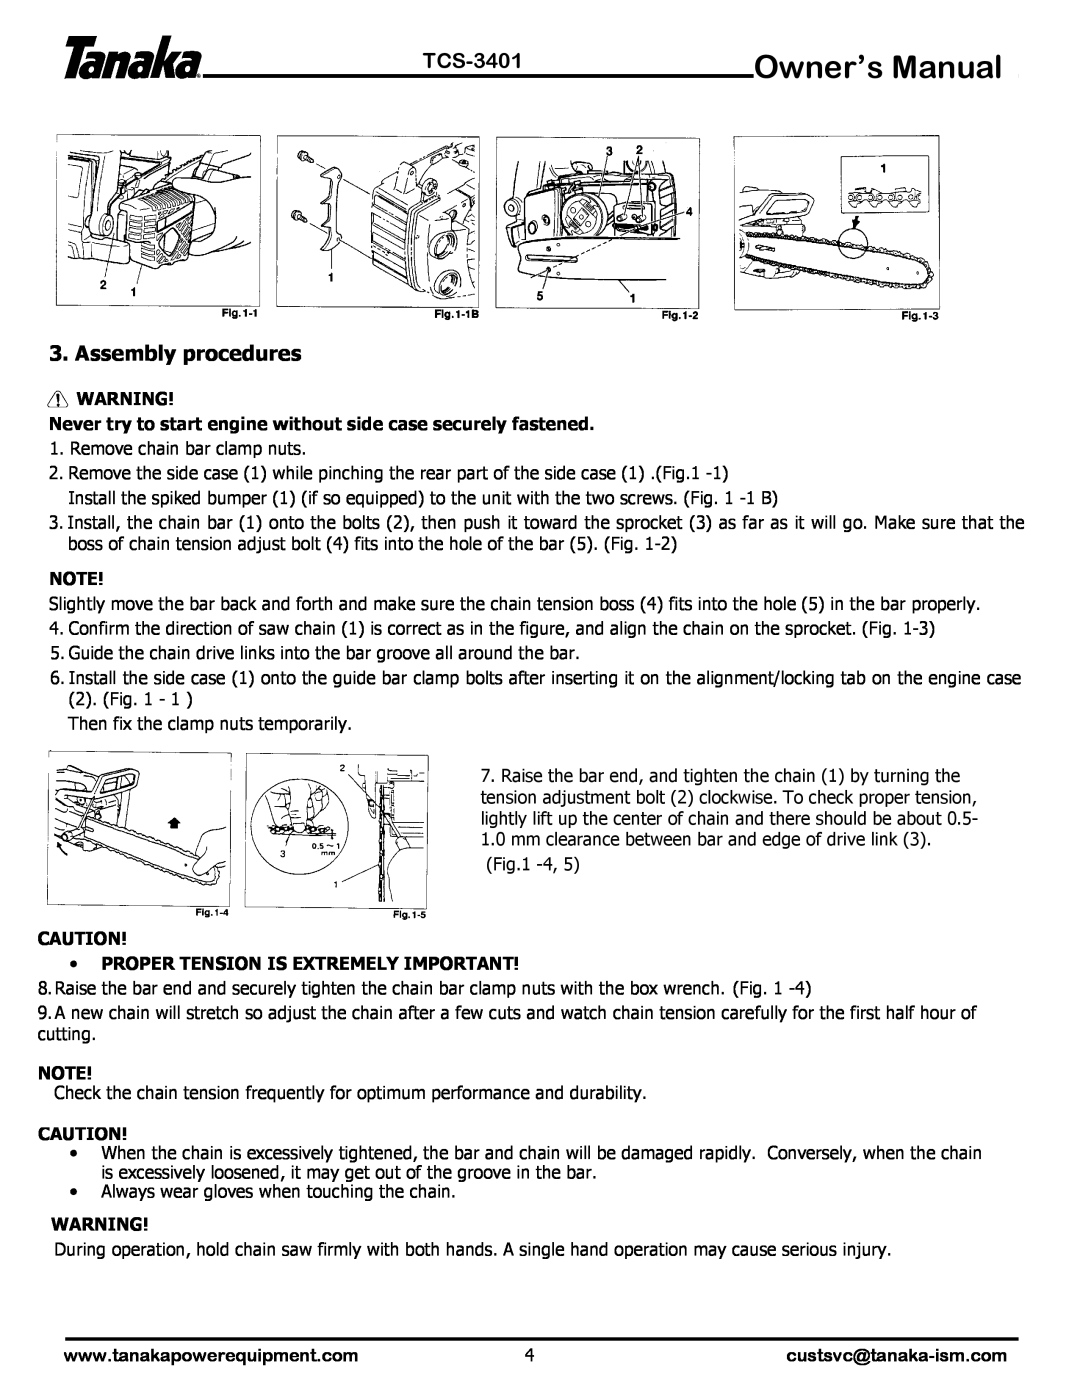 Tanaka TCS-3401 manual Assembly procedures 